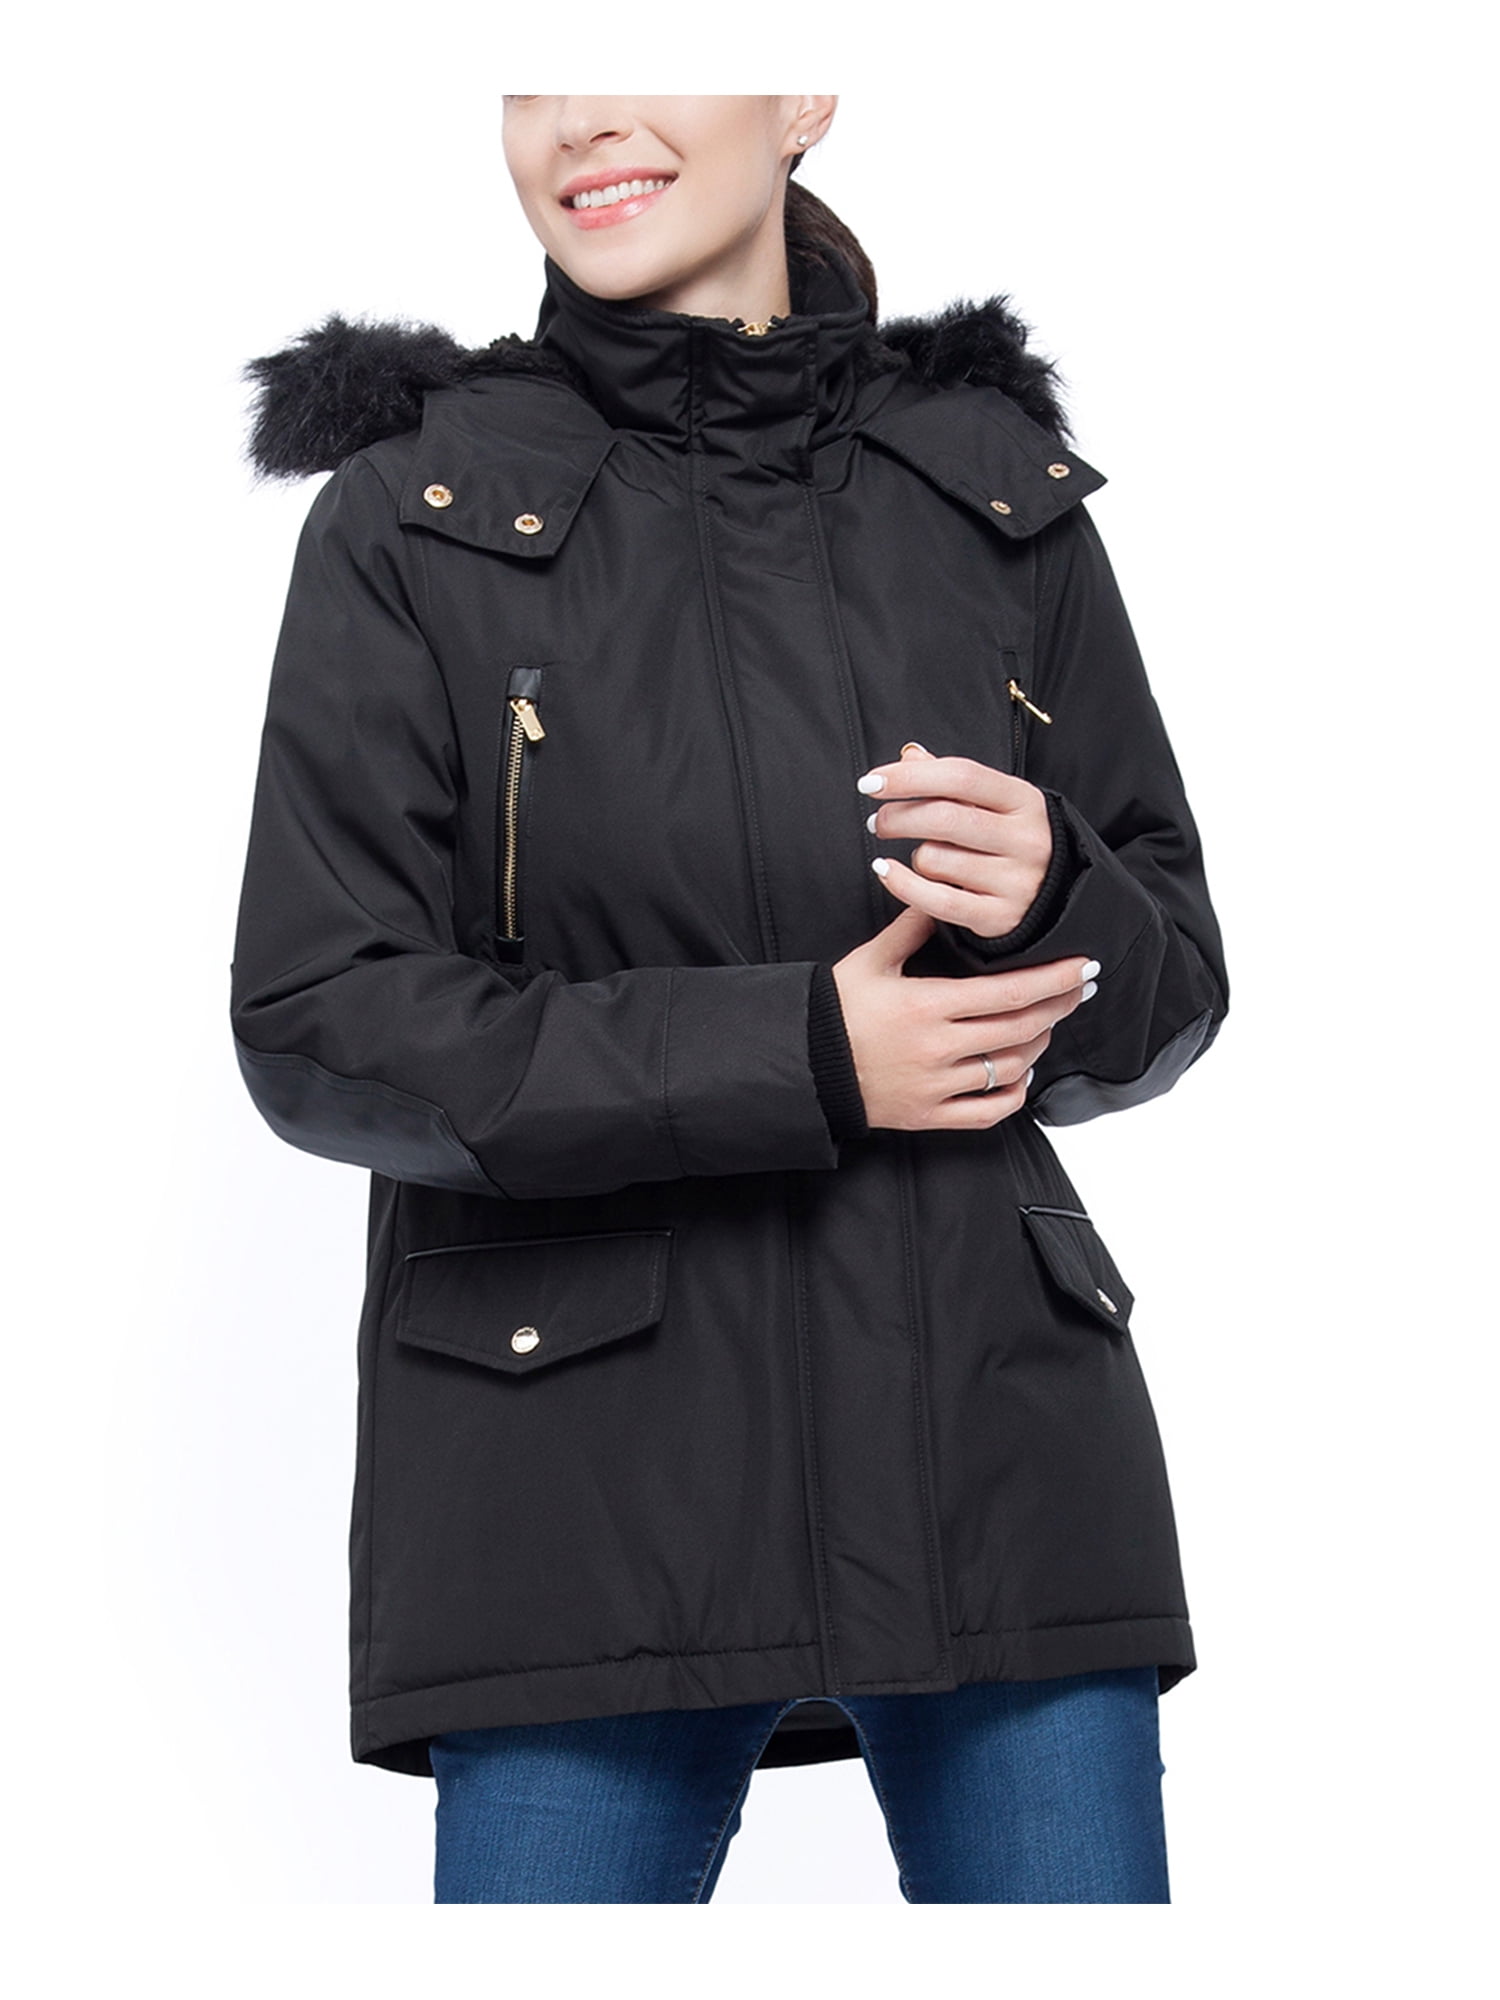 Rokka&Rolla Women's Winter Coat with Faux Fur Hood Parka Jacket 